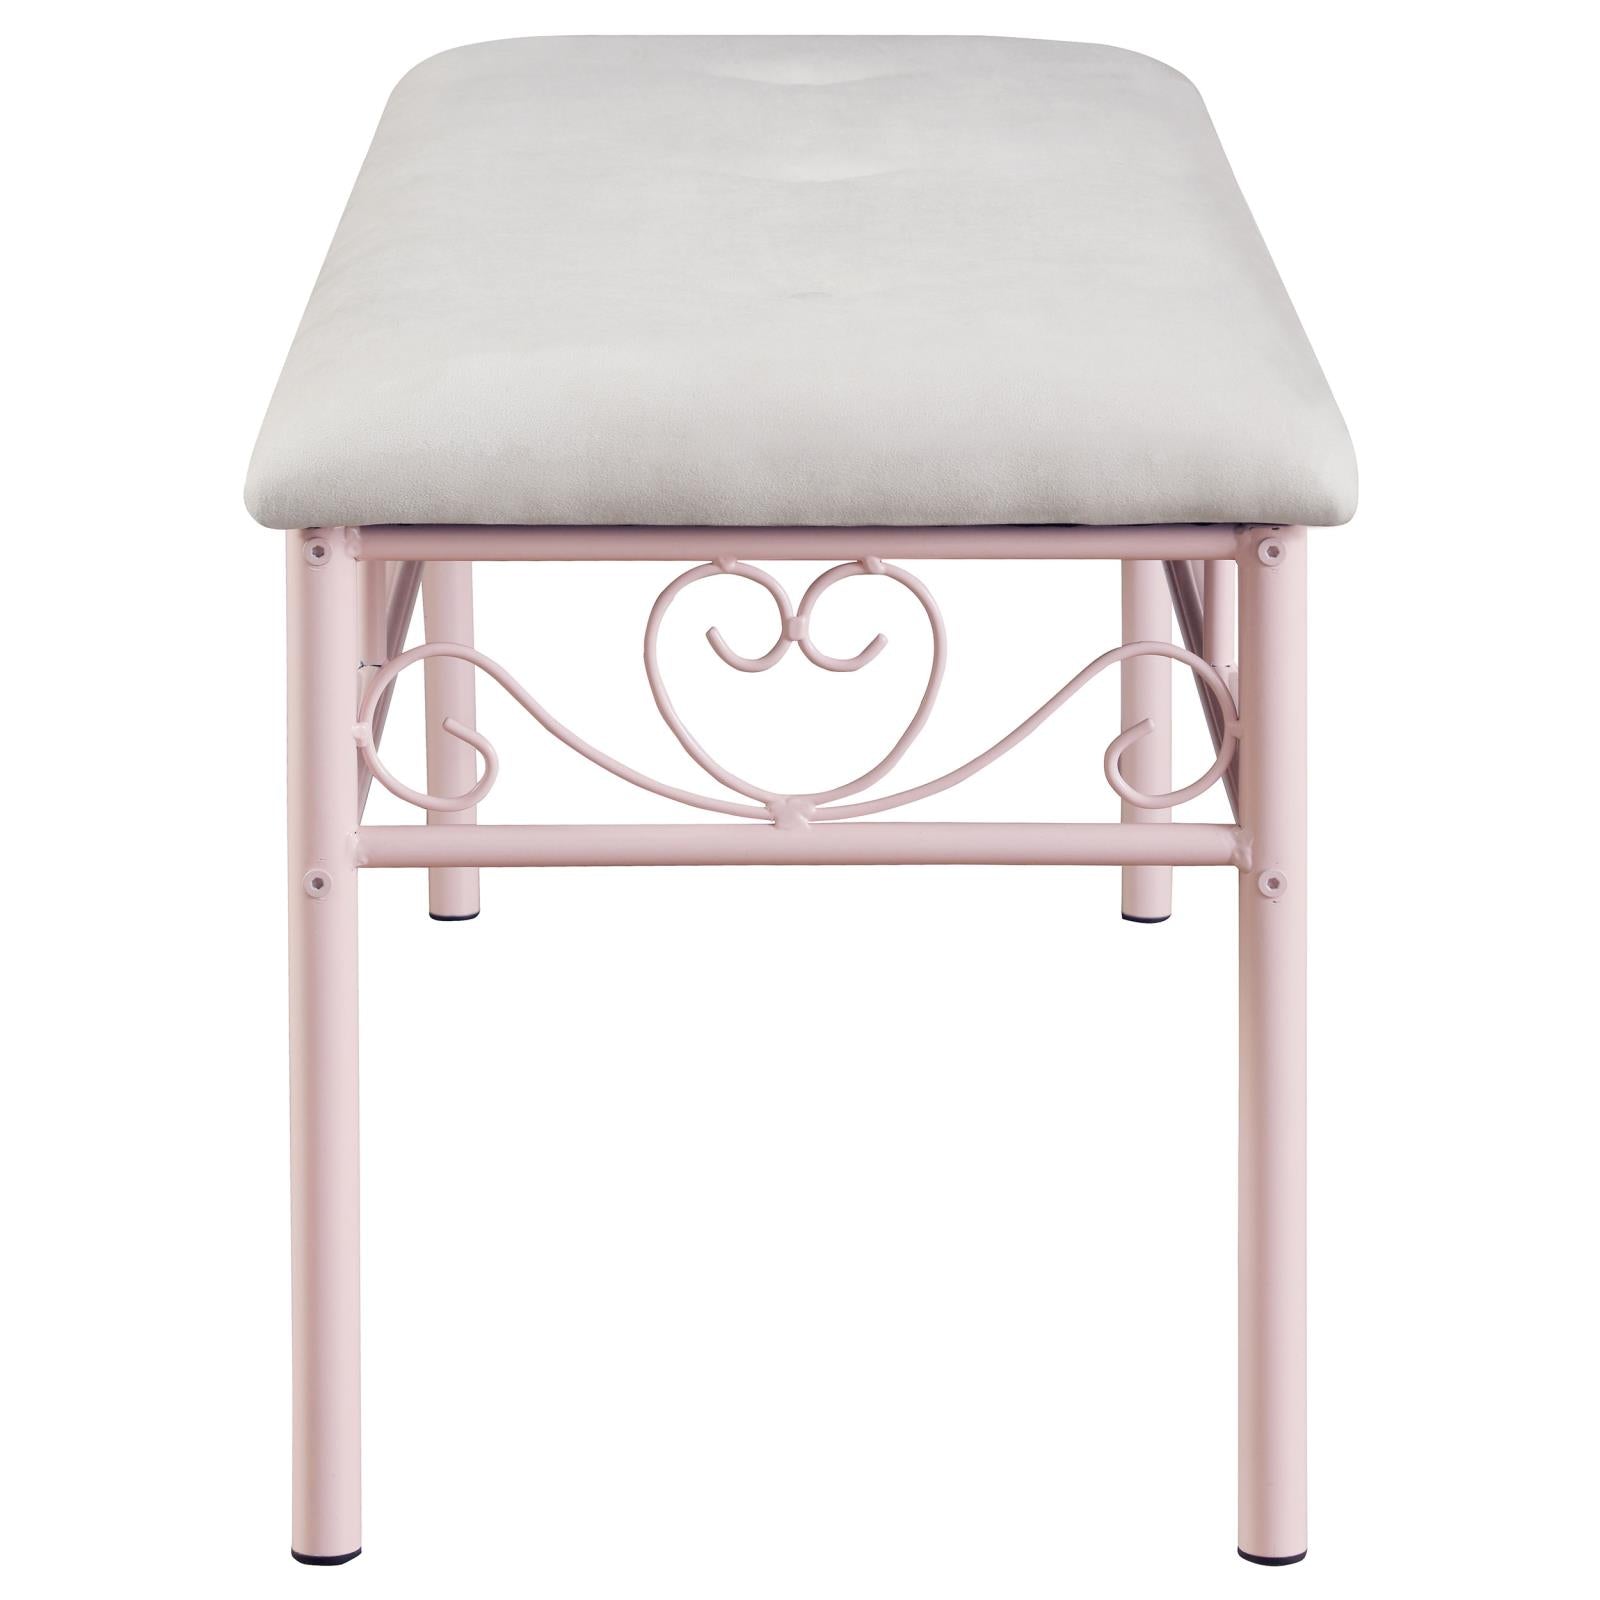 Massi Powder Pink Tufted Upholstered Bench - 401156 - Bien Home Furniture &amp; Electronics